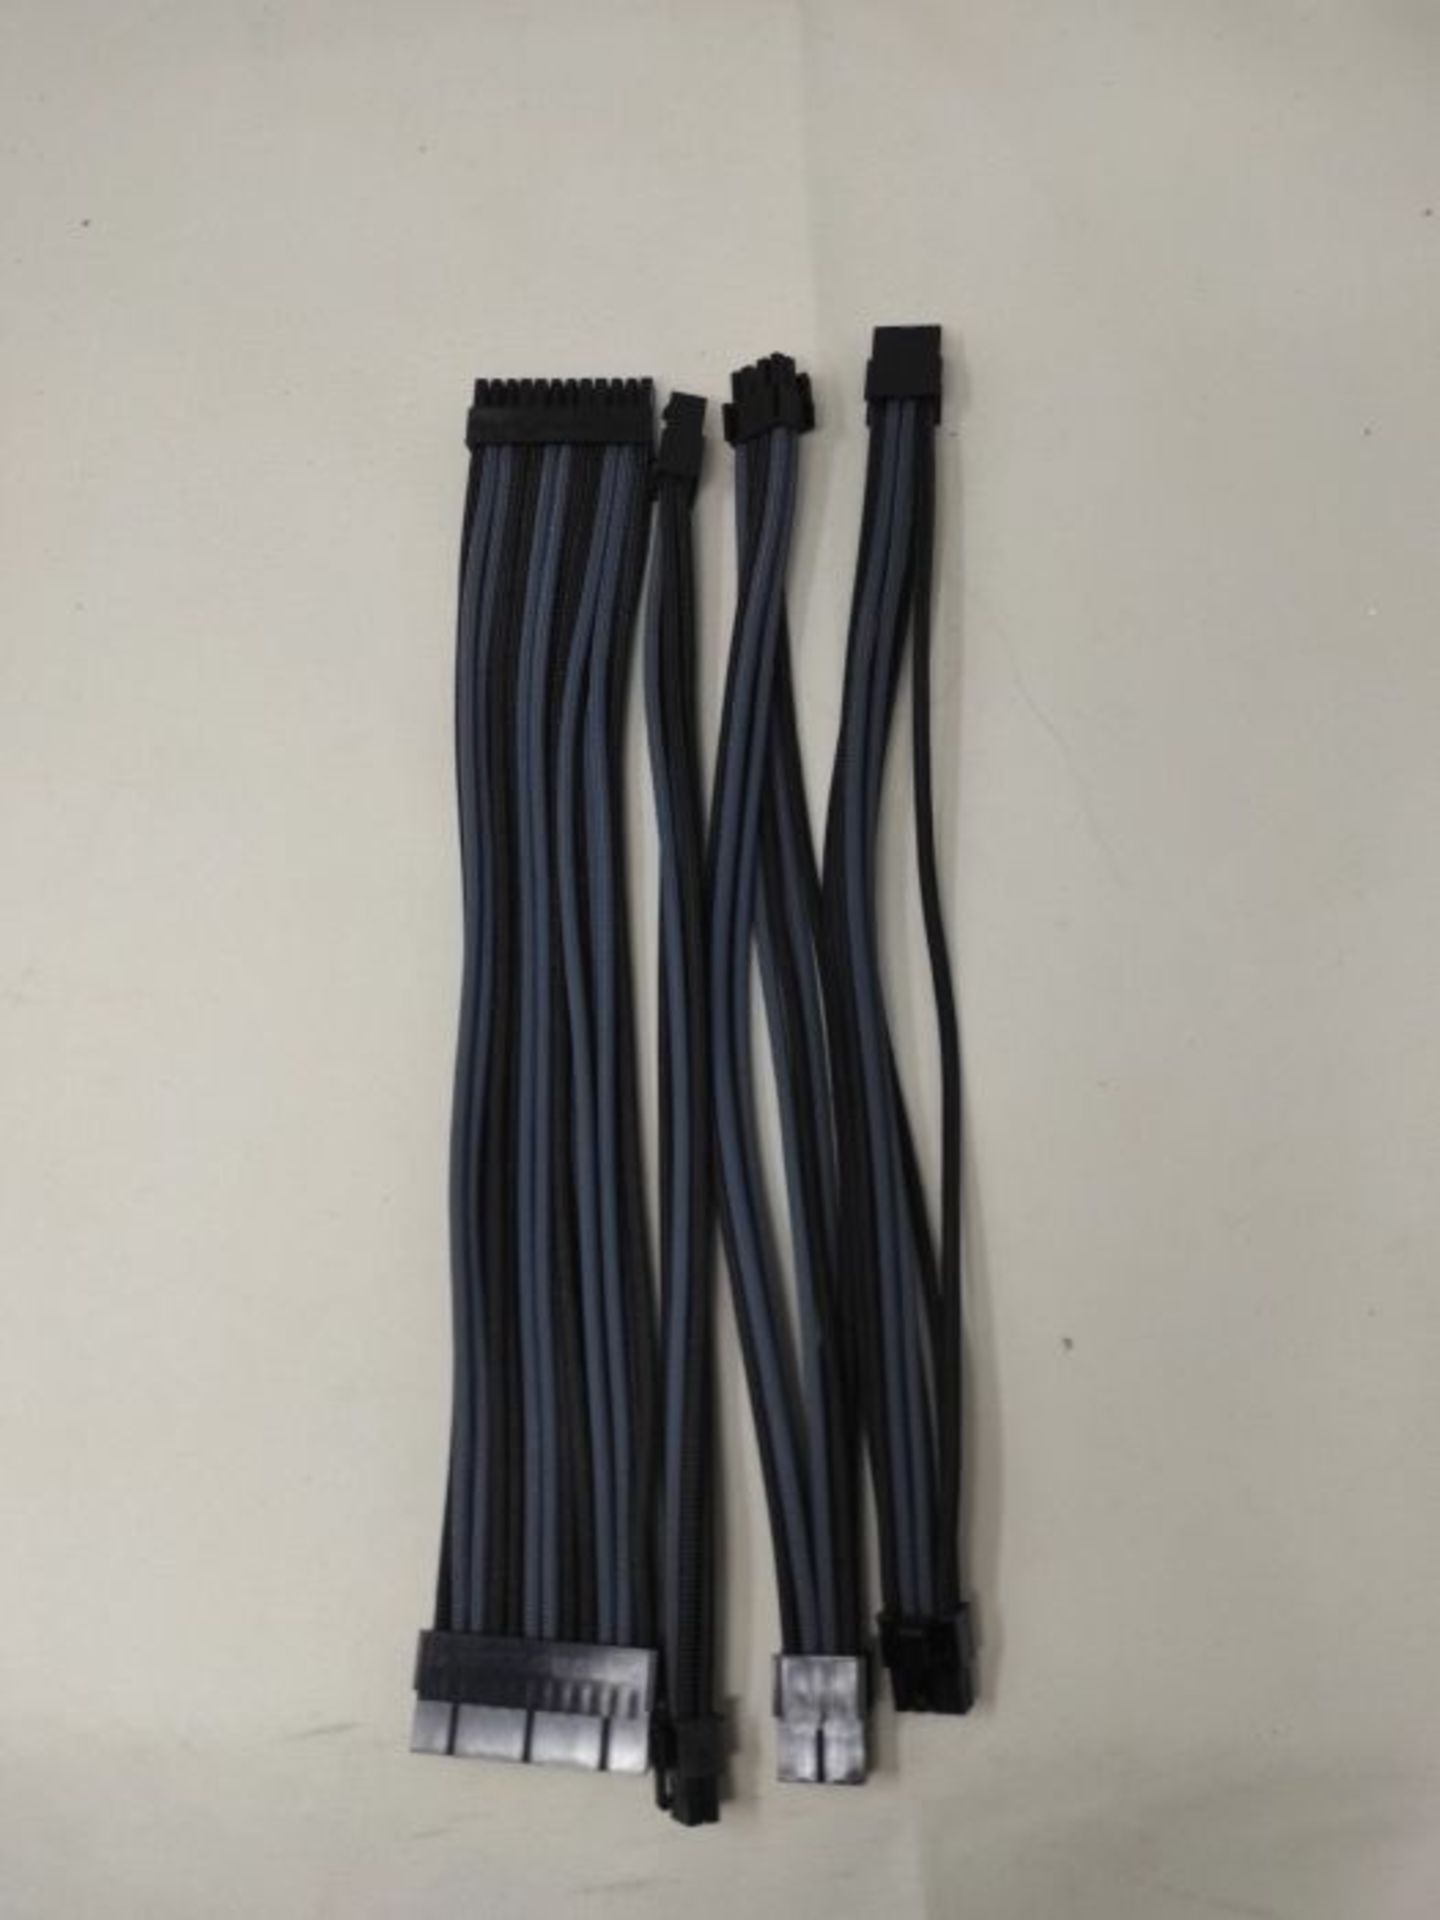 EZDIY-FAB Sleeved Cable -Kabelverlängerung für Stromversorgung mit Combs 24 Pin 8PIN - Image 2 of 2